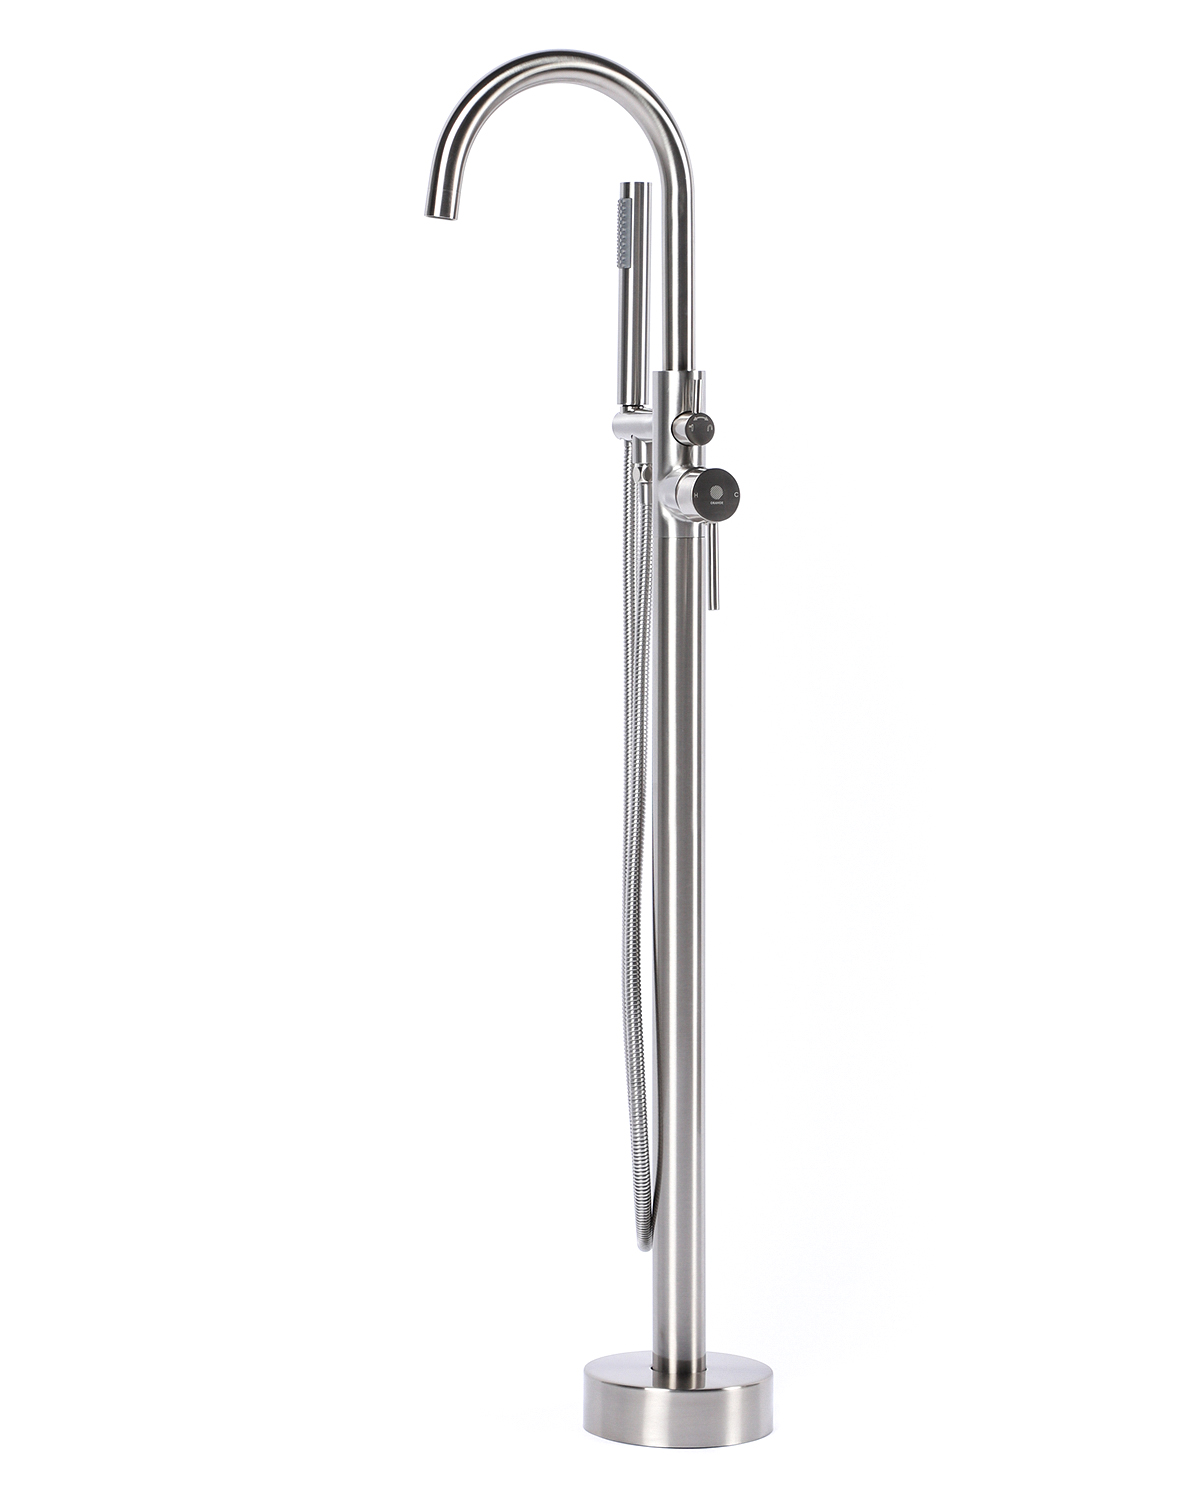 Смеситель Orange Steel M99-336ni для ванны с душем